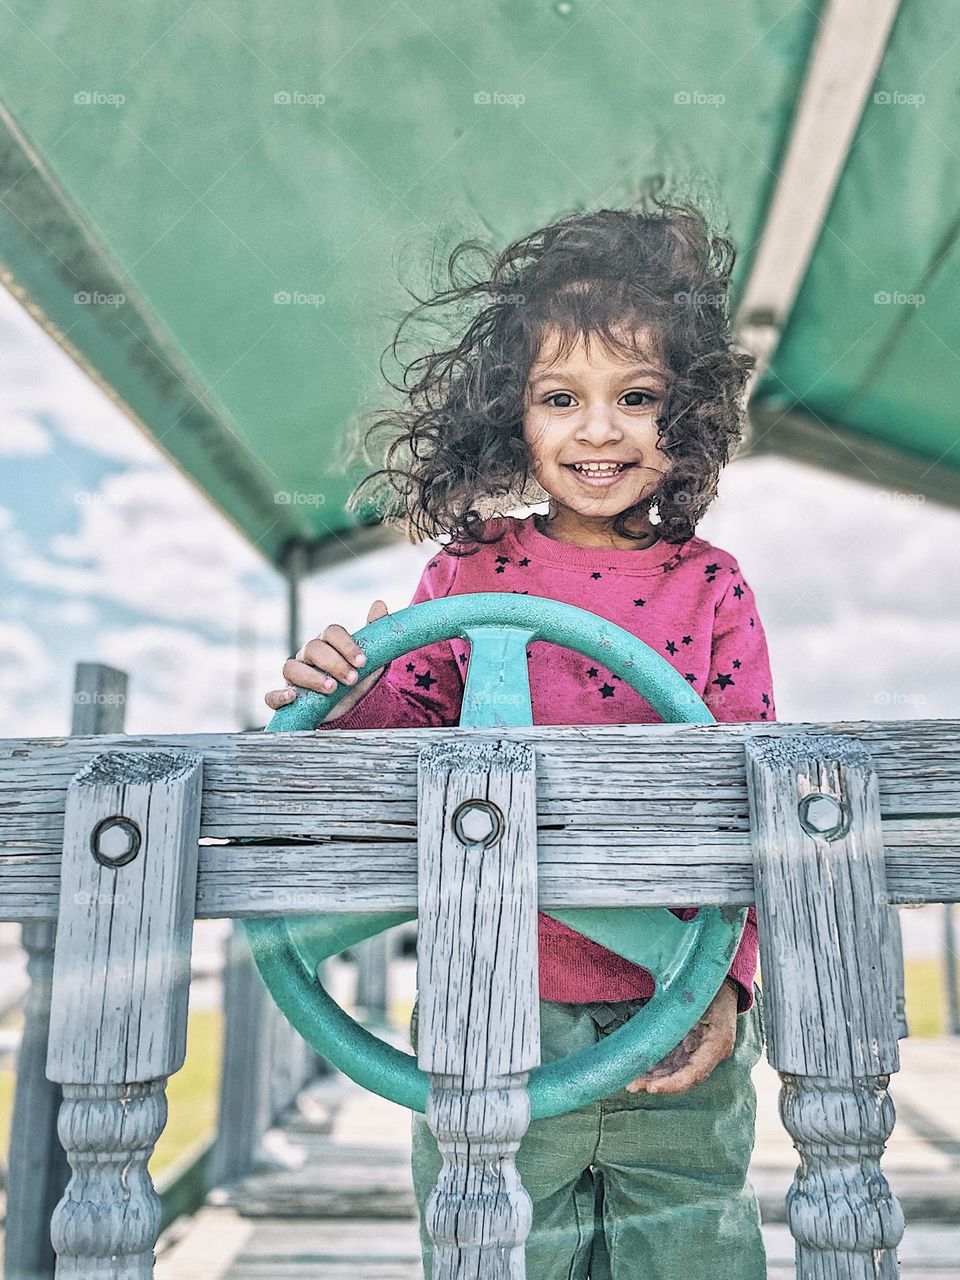 Toddler girl plays on playground, toddler pretend play, playing on a ship playground, toddler at the wheel